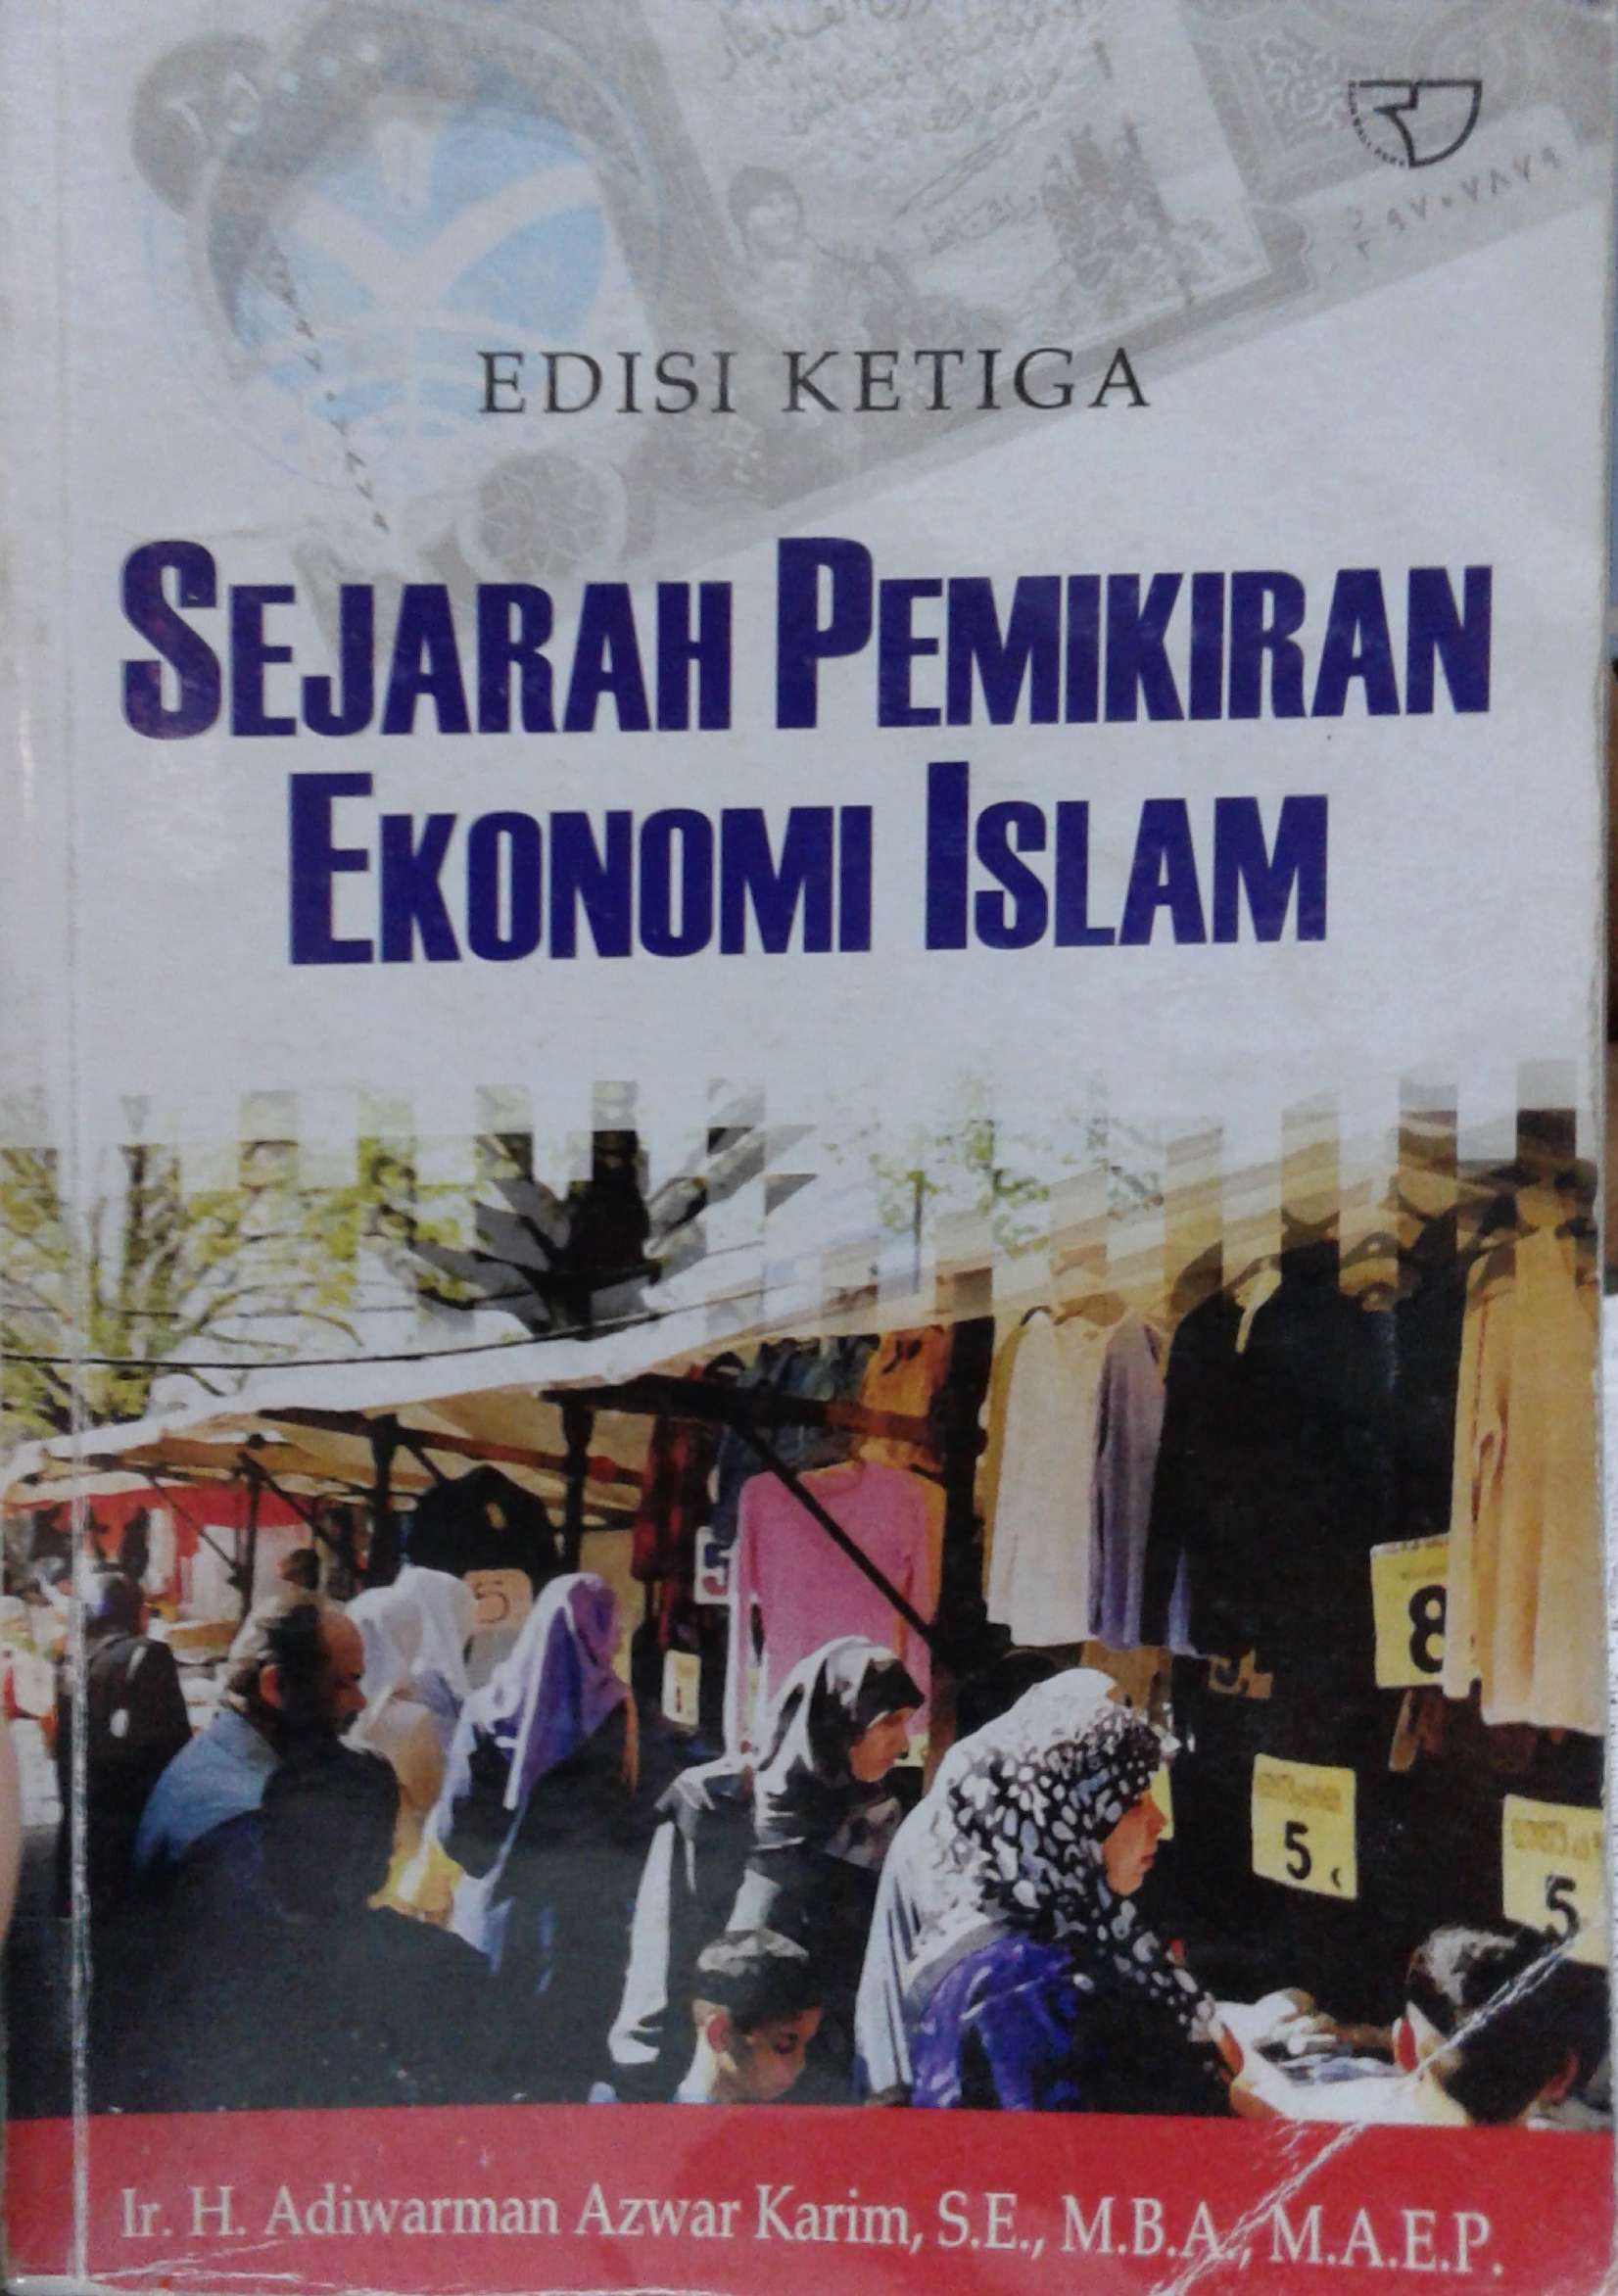 Sejarah Pemikiran Ekonomi Islam : edisi ketiga